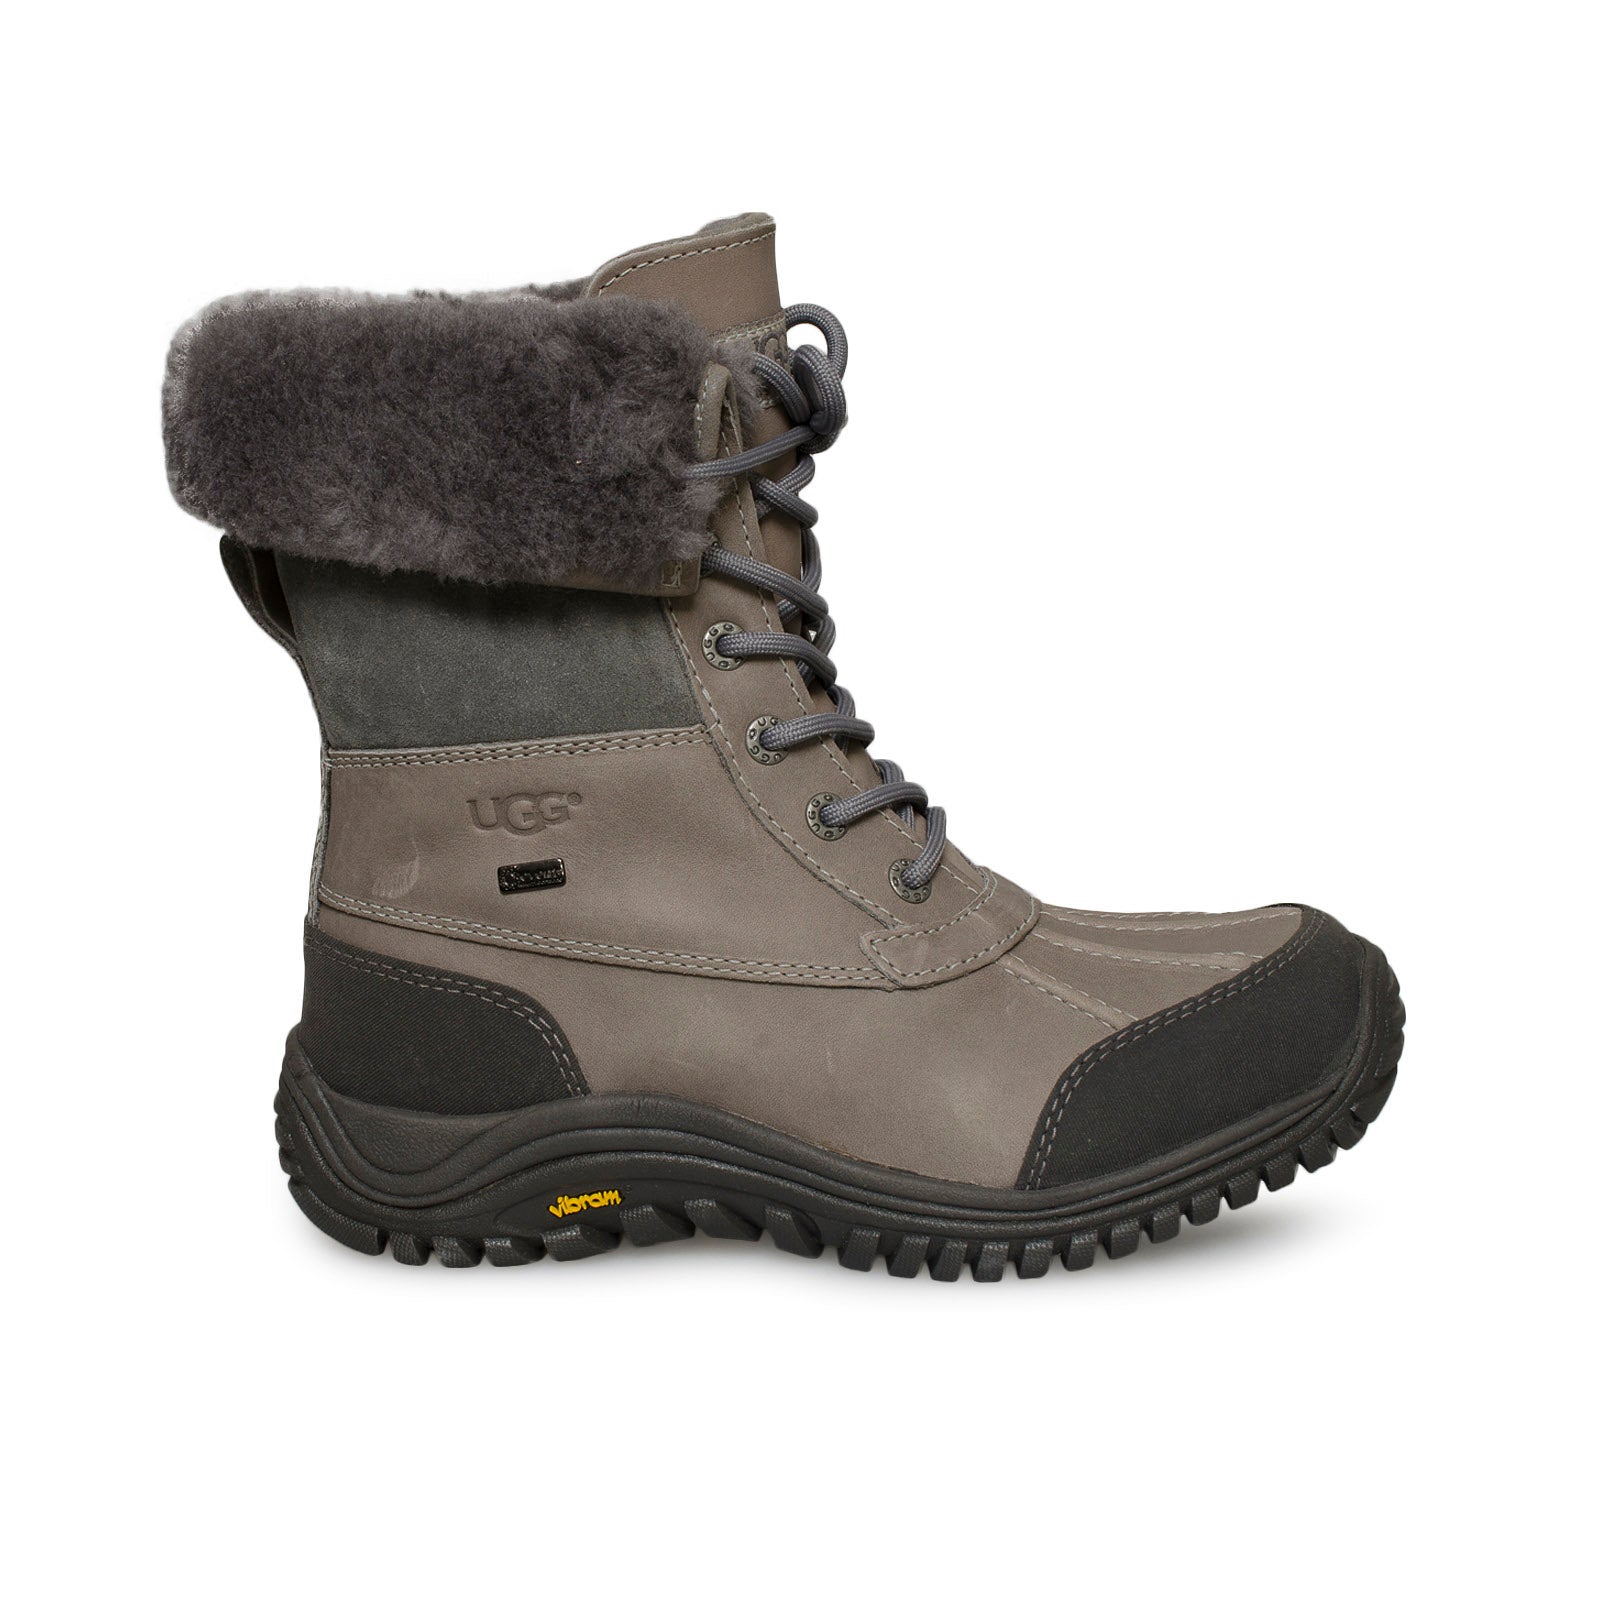 UGG Adirondack II Grey Boots – MyCozyBoots